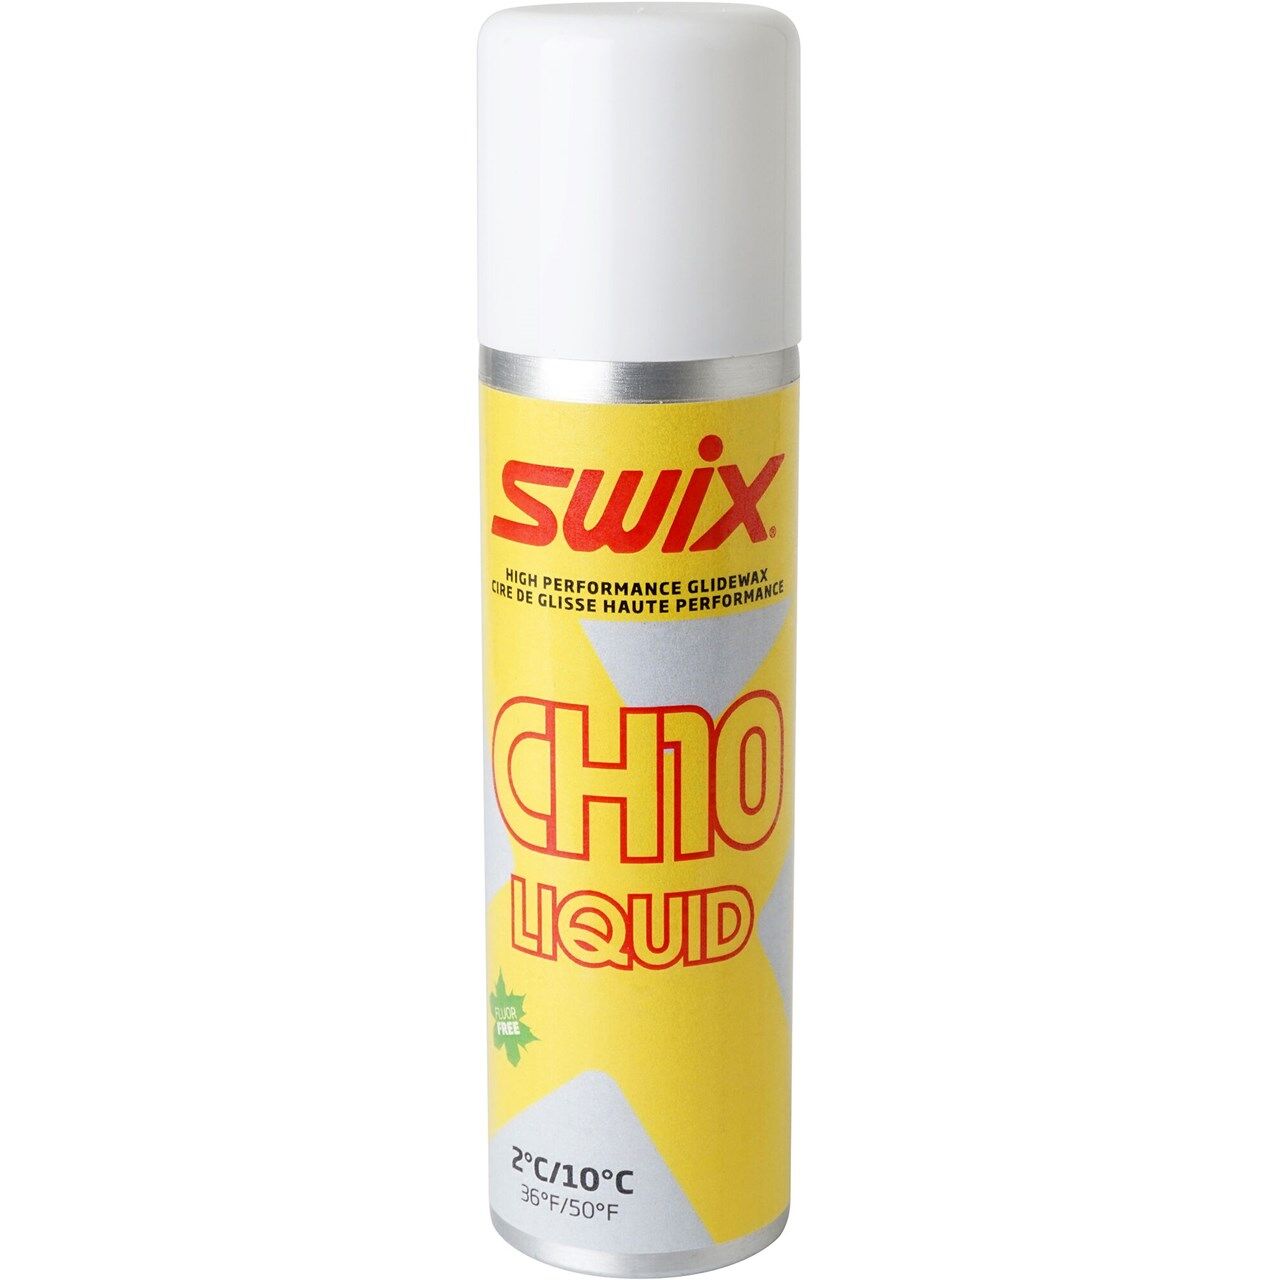 Swix CH10X Liquid 2C/10C (125ml) - Skiwax